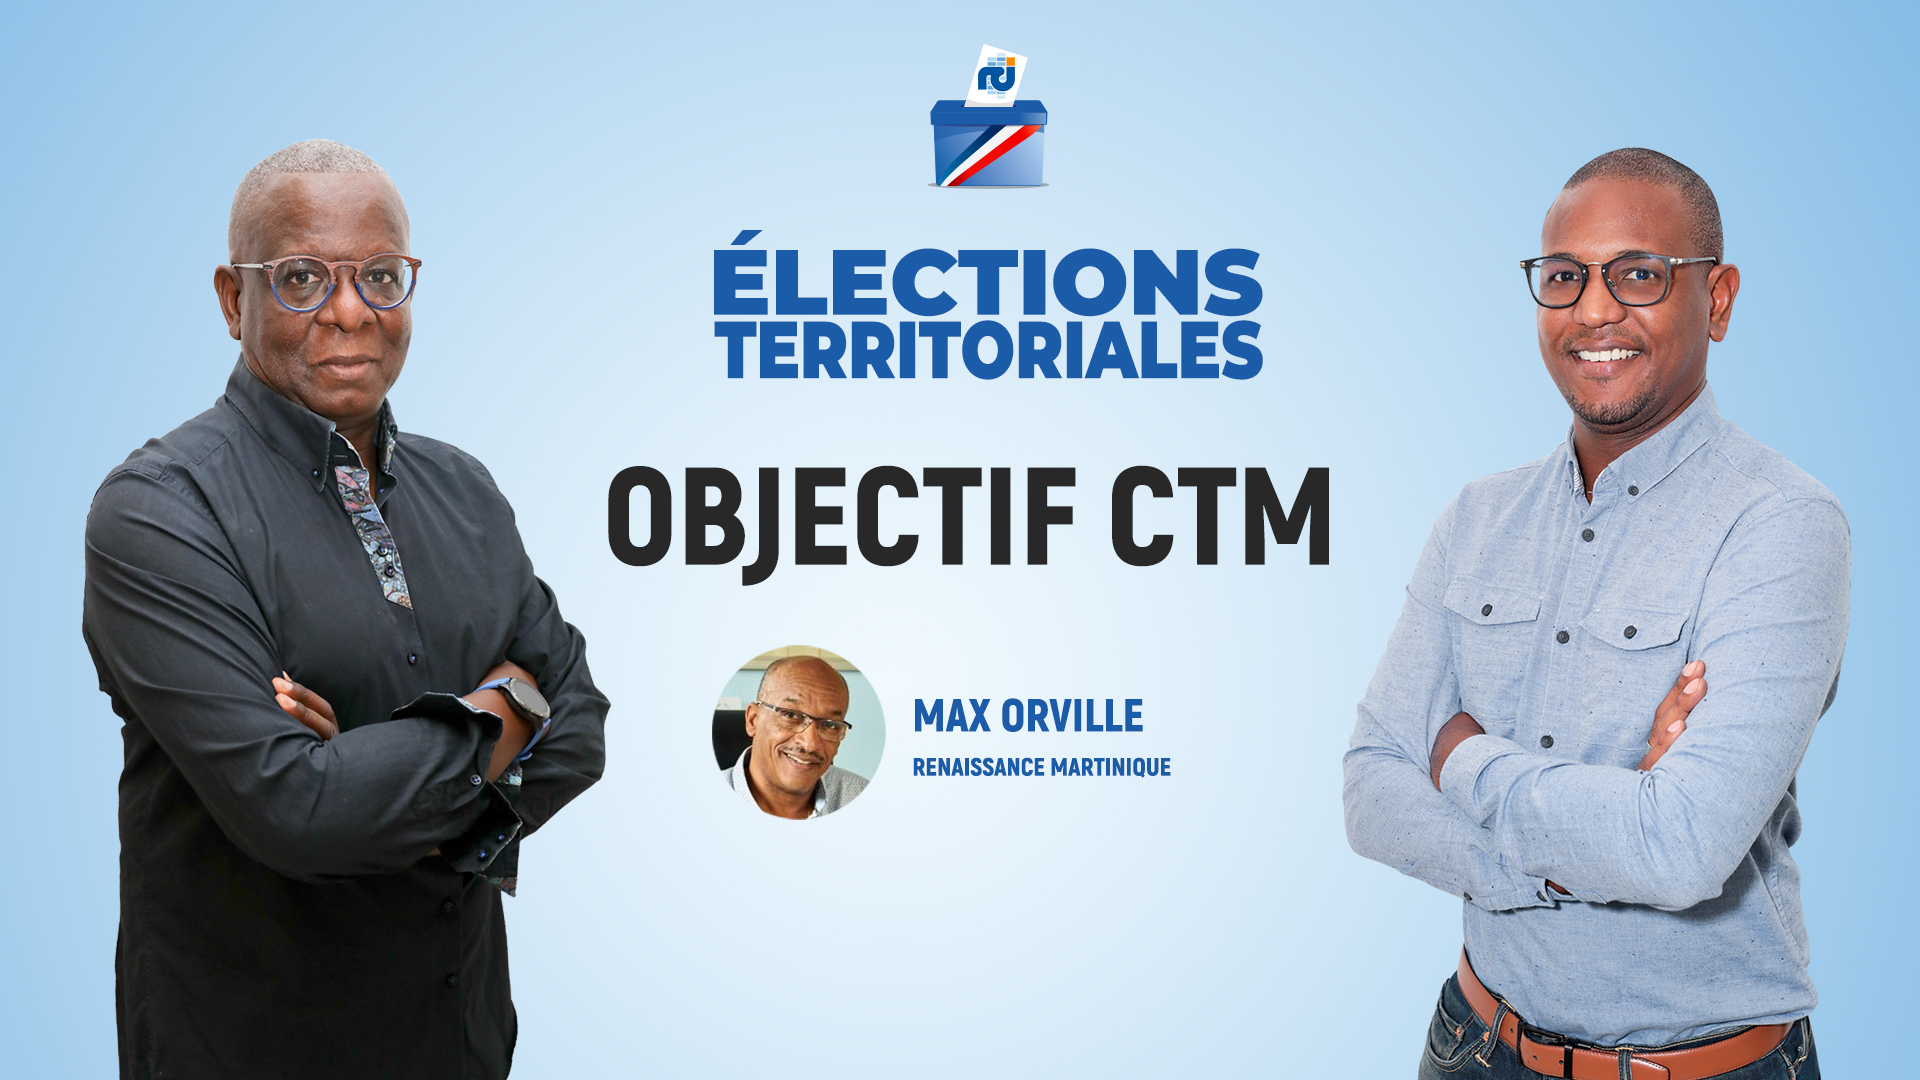     Max Orville est l'invité d'Objectif CTM, l'émission politique de RCI

